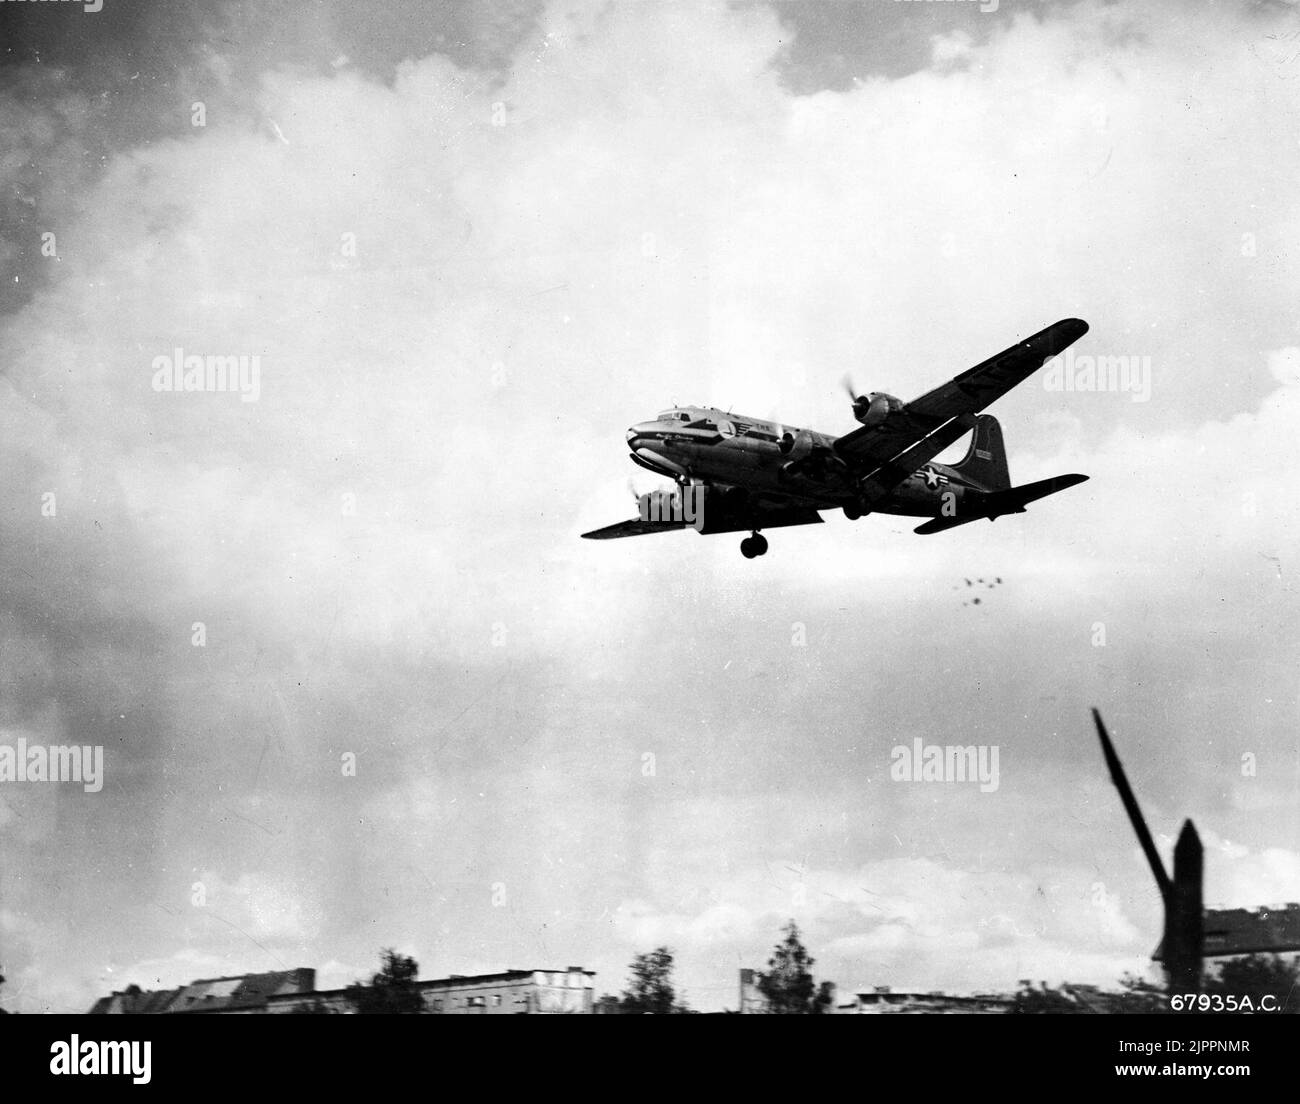 C-54 chute de bonbons pendant le transport aérien de Berlin, vers 1949. Un Skymaster C-54 de la U.S. Air Force Douglas faisant une goutte de bonbons « Little Vittles » (notez les parachutes sous la queue du C-54) à l'approche d'un aérodrome de Berlin. Les équipages ont laissé des bonbons aux enfants pendant le transport aérien de Berlin. Banque D'Images